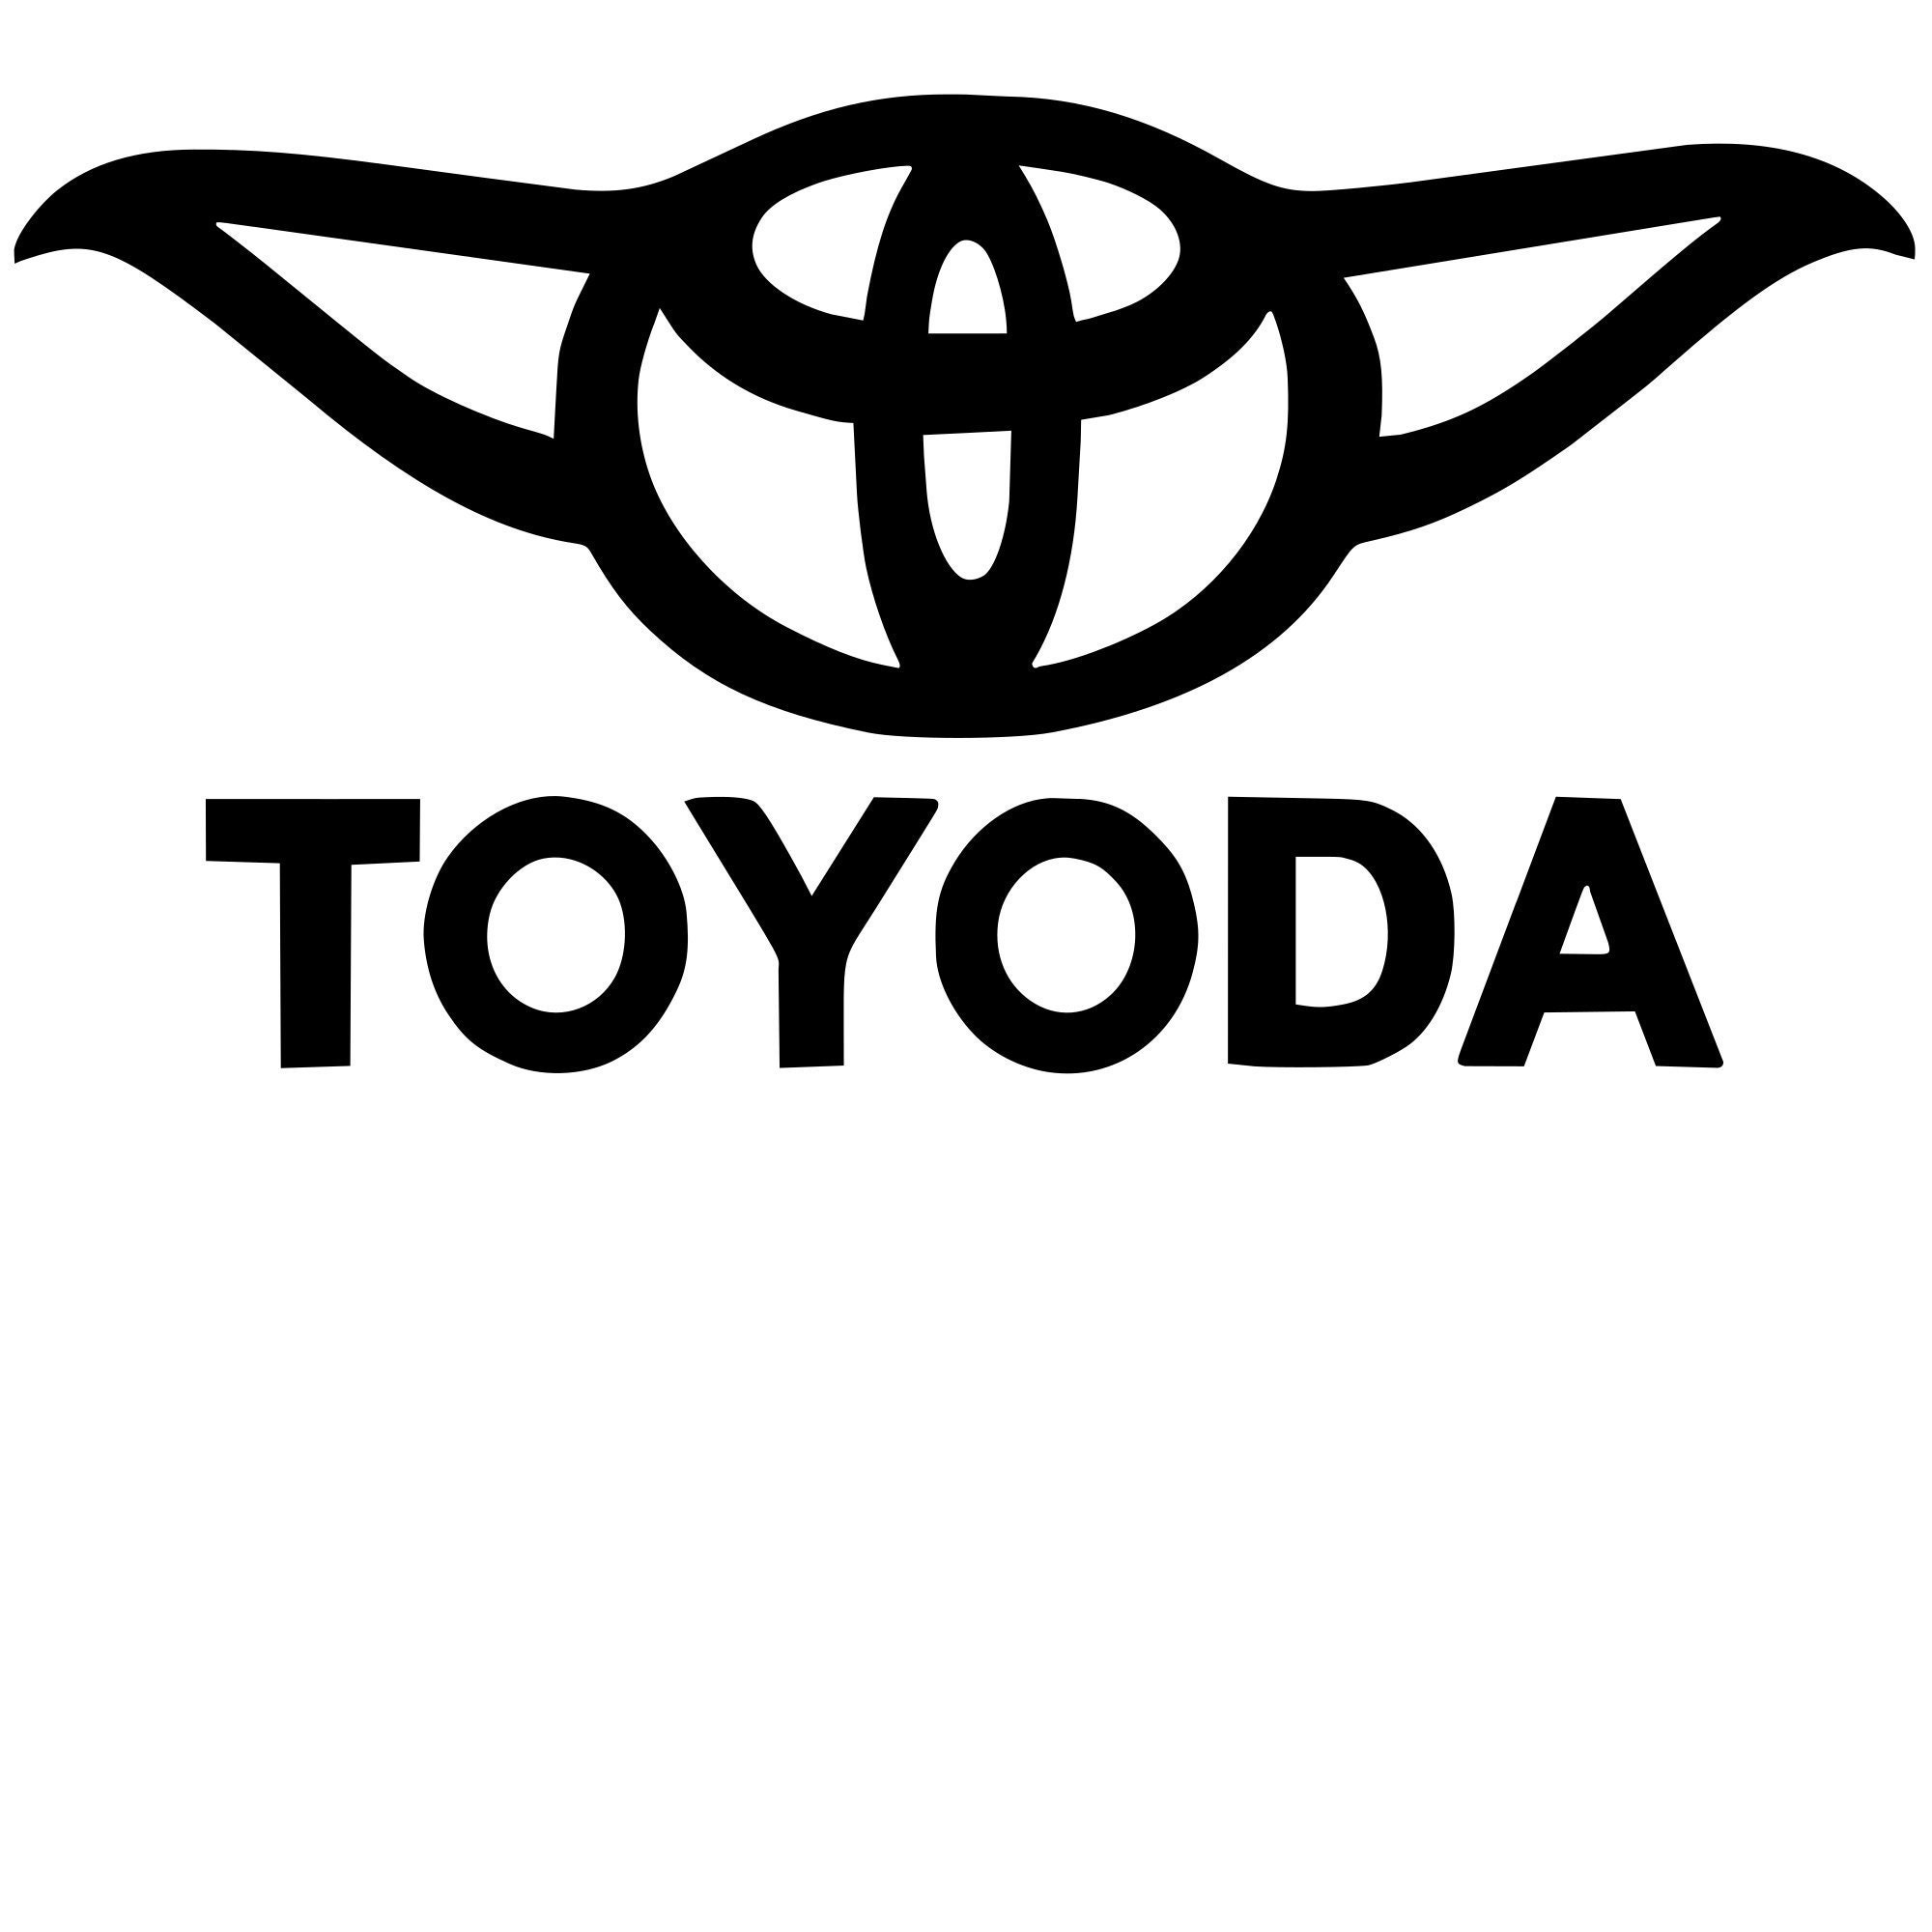 window sticker Vehicle sticker car label vinyl decal Toyota car decal TOYODA car sticker Baby Yoda Toyoda car decal Car stickers